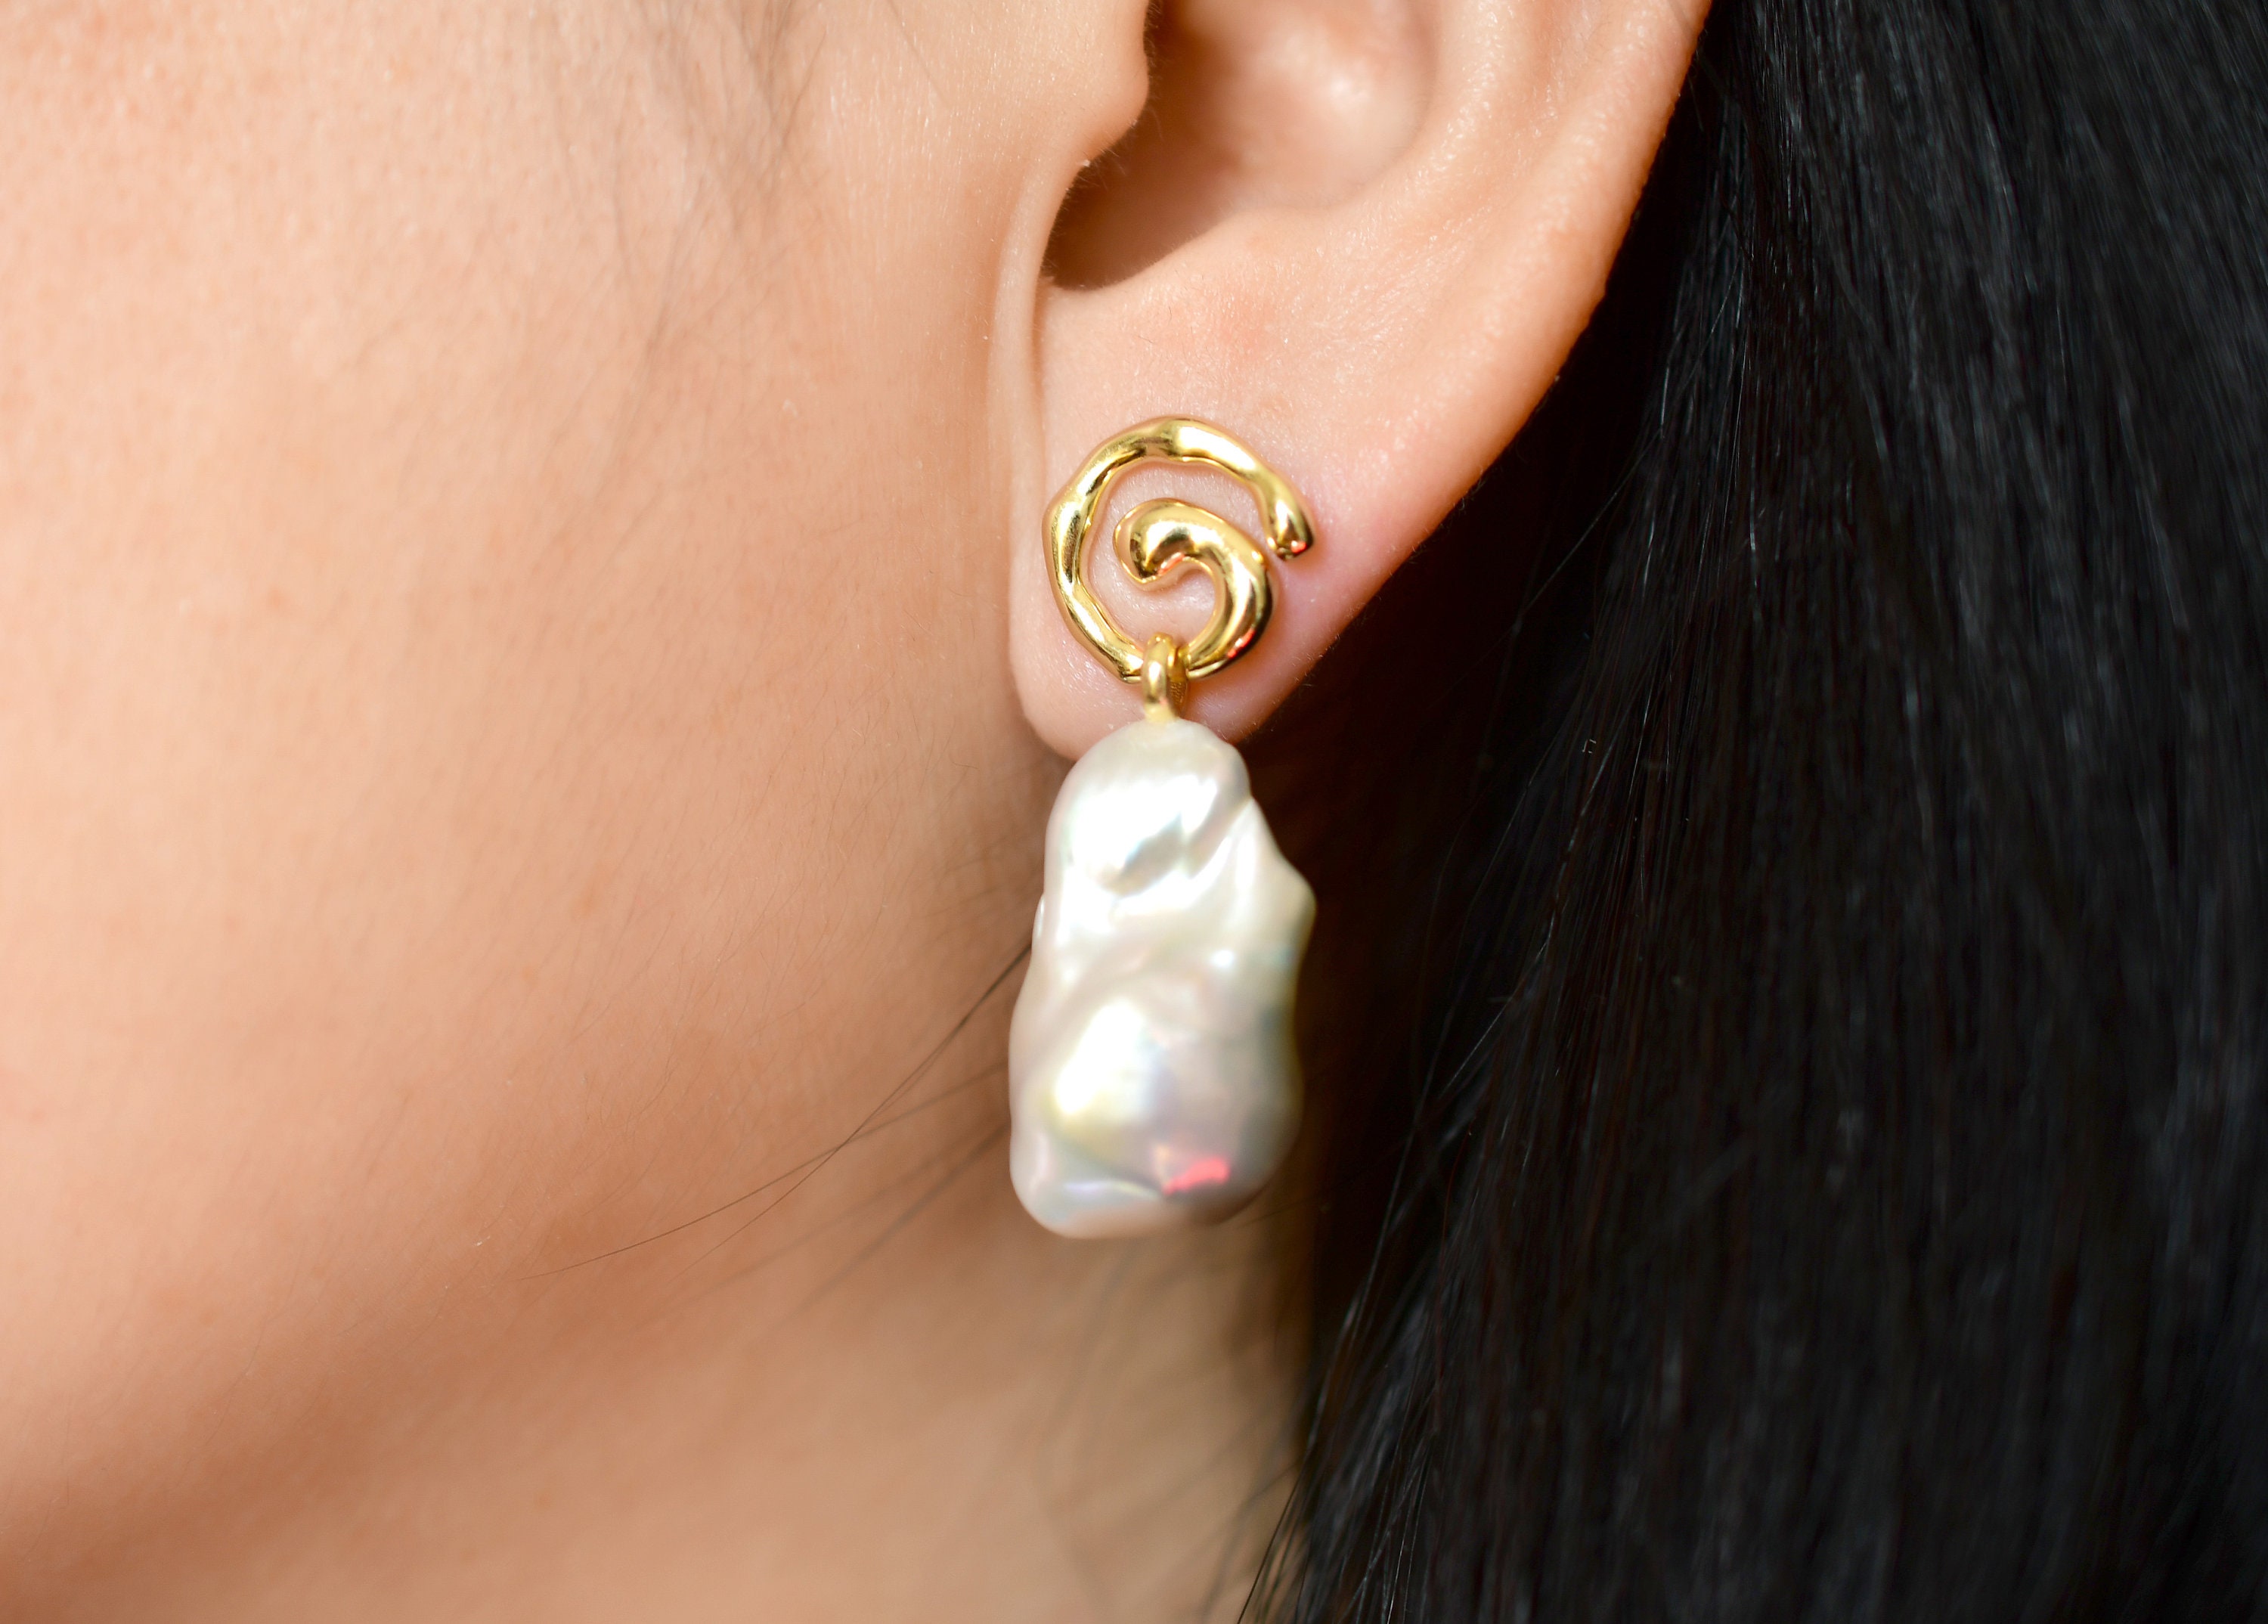 Gold Pearl Stud Earrings Handmade Vintage Jewelry - marble stone | Big stud  earrings, Stud earrings, Round stud earrings